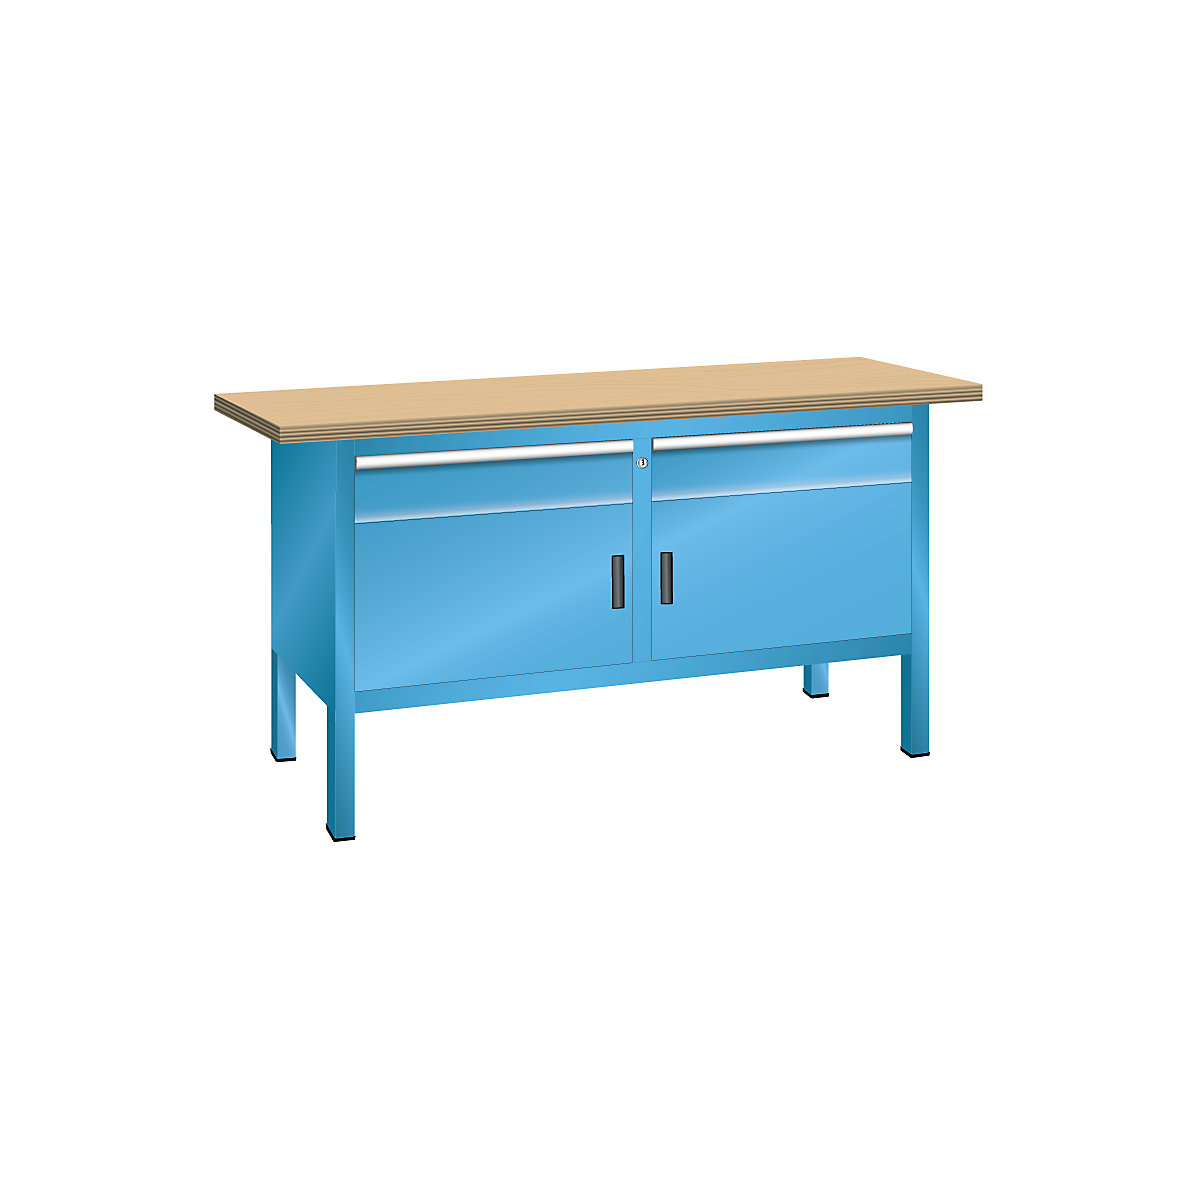 Stół warsztatowy z blatem z litego buku, konstrukcja ramowa – LISTA, szer. 1500 mm, 2 szuflady, 2 drzwi, korpus jasnoniebieski, front jasnoniebieski-2